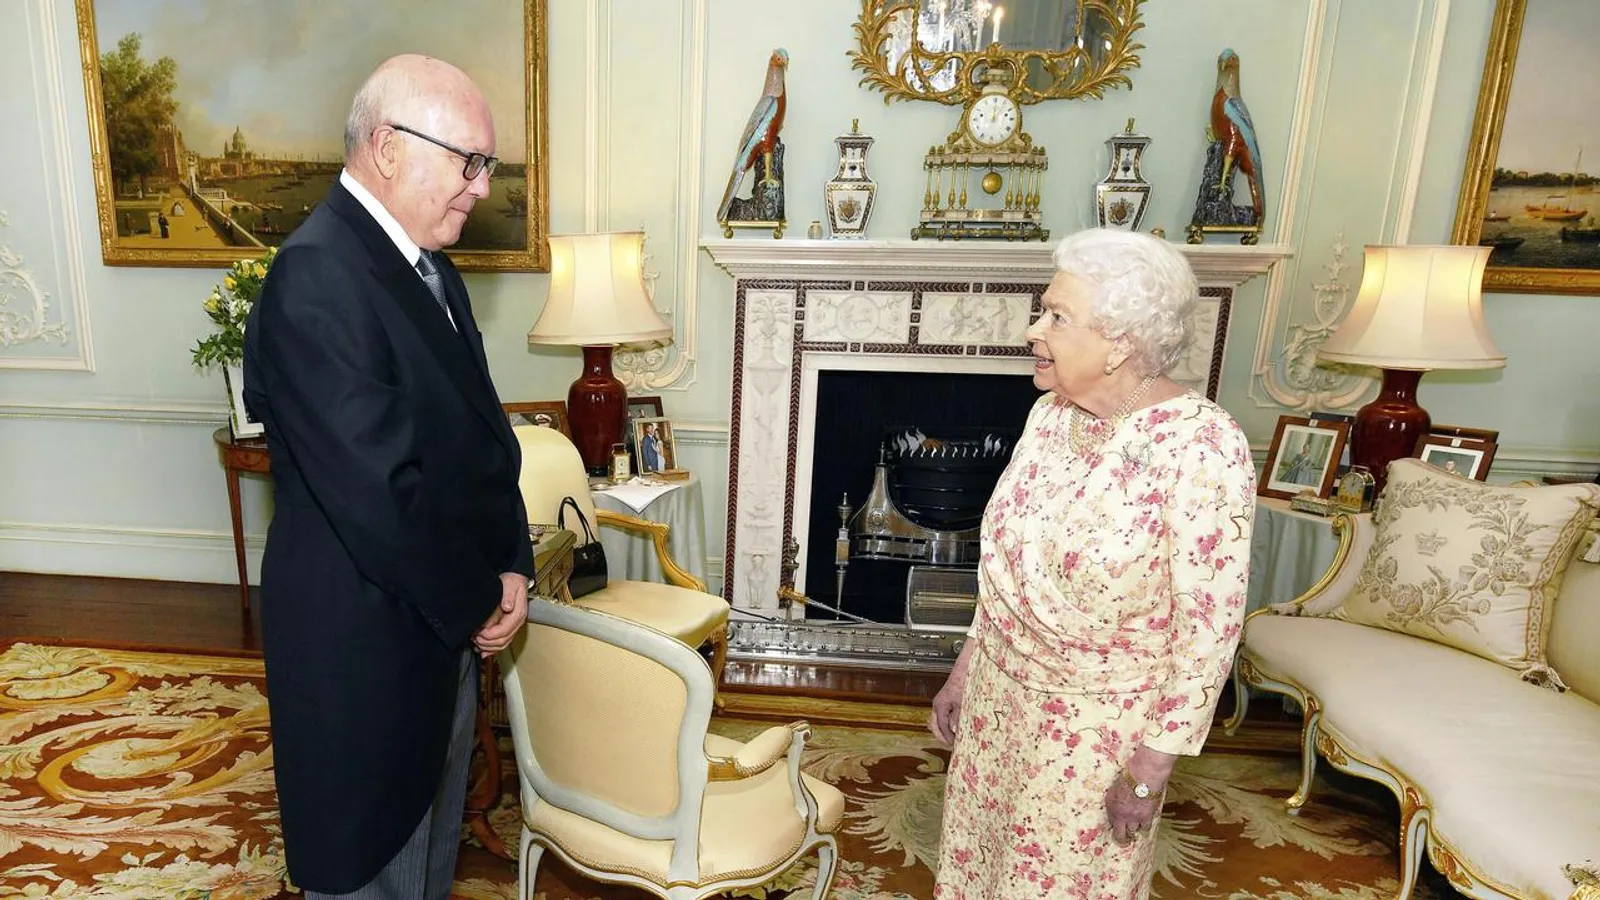 5 Kode Rahasia yang Disampaikan Ratu Elizabeth Lewat Tas Tangannya